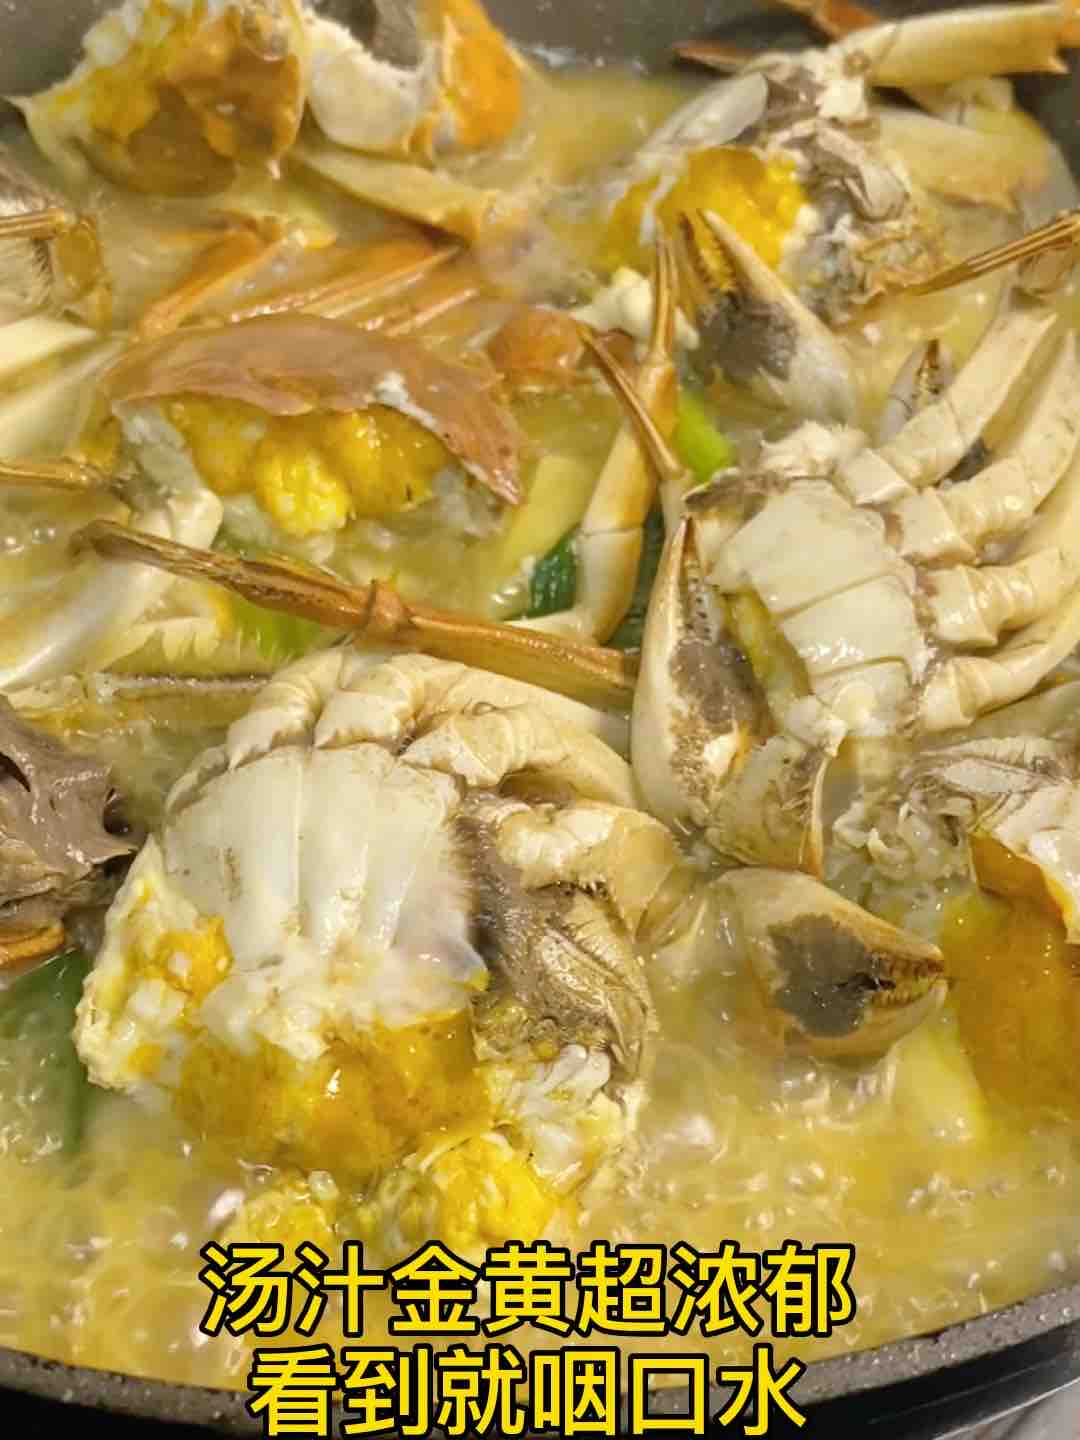 Sauté ❗️ Three-minute Fattened Crab recipe